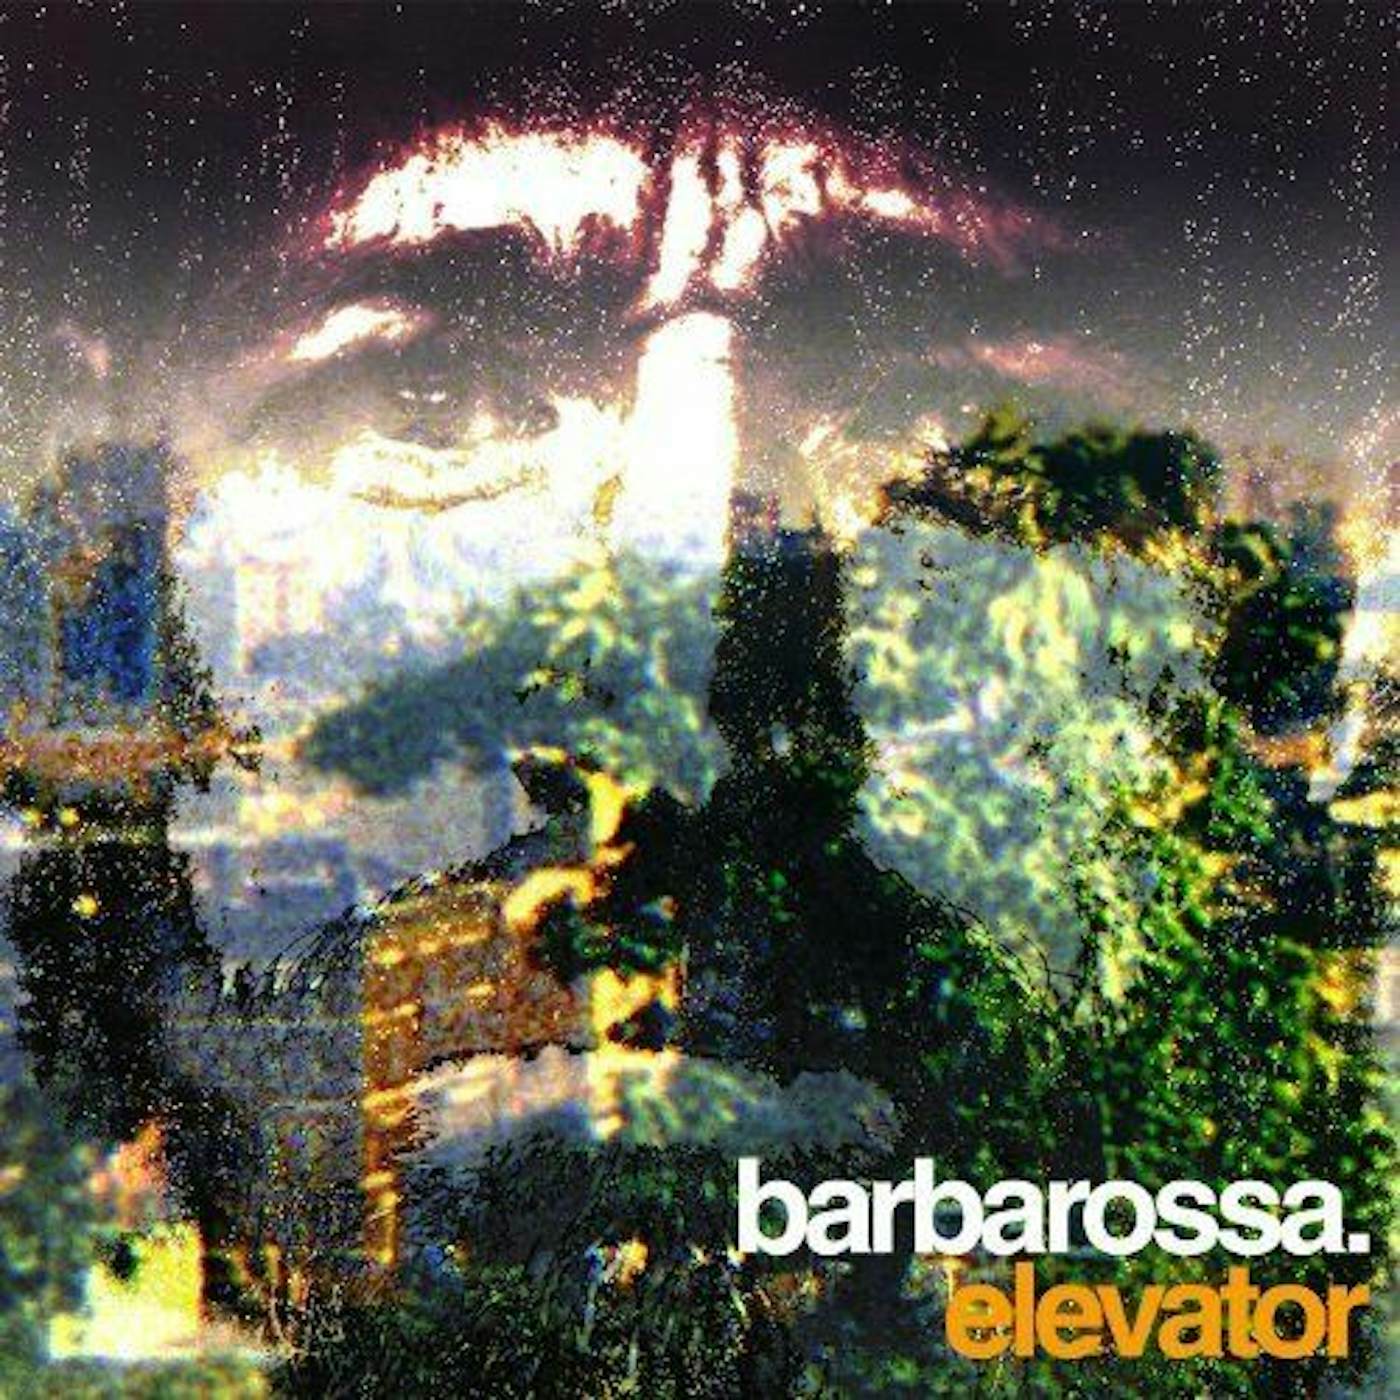 Barbarossa Elevator Ep   10 Vinyl Record